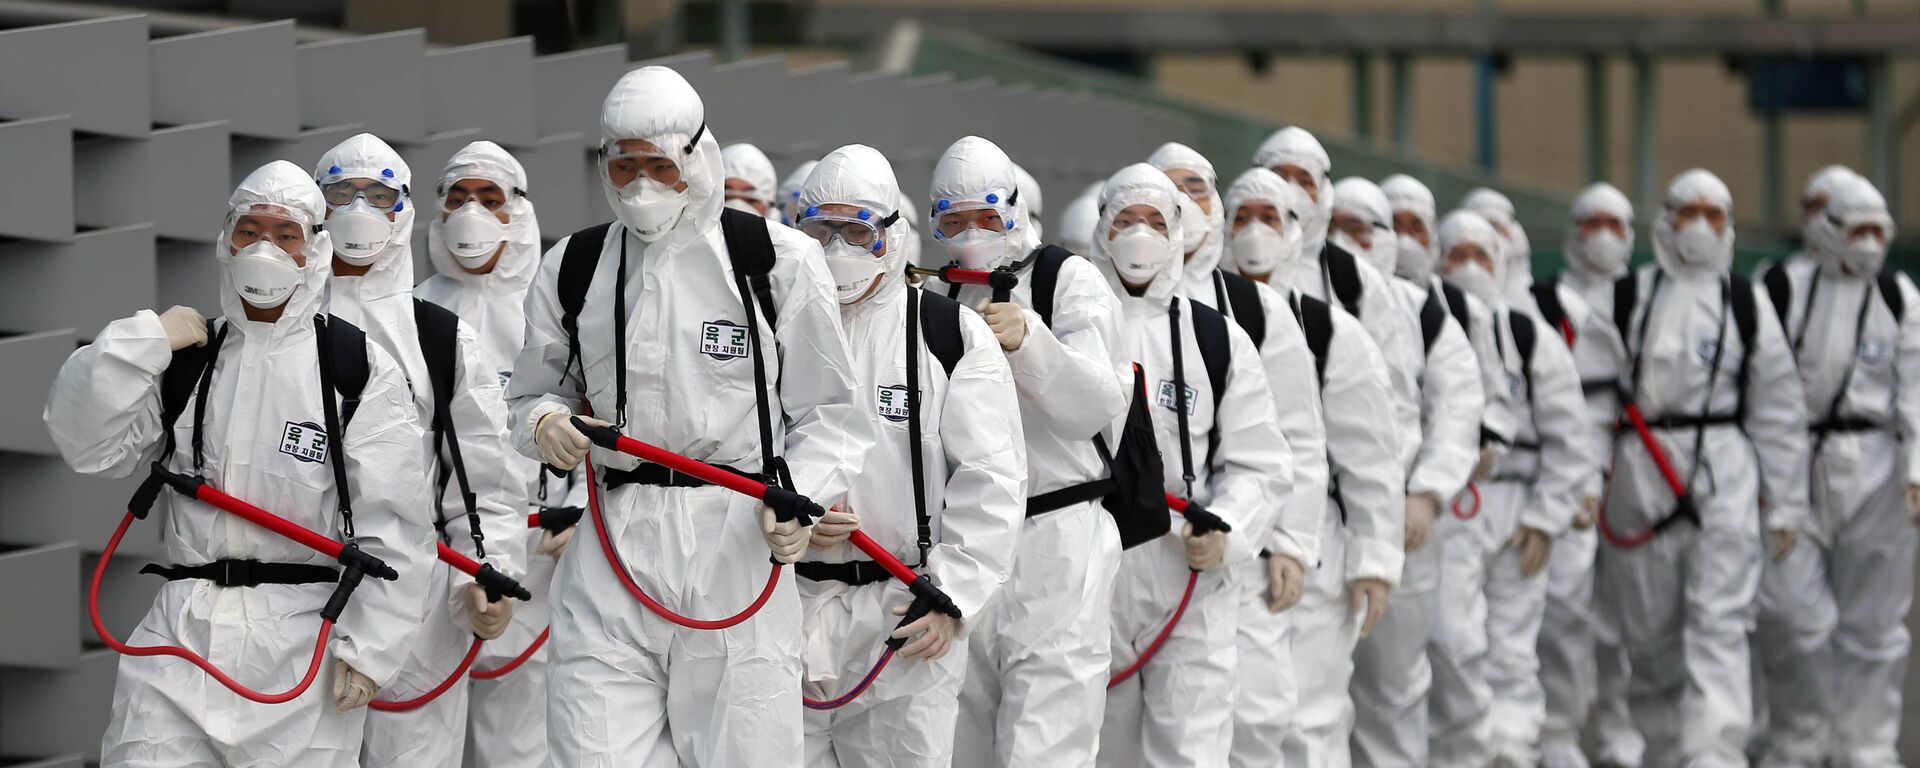 جنود من كوريا الجنوبية يرتدون أزياء واقية خاصة خلال تنفيذ اجراءات الوقاية للحد من انتشار فيروس كورونا COVID-19 في كوريا الجنوبية، 29 فبراير 2020 - سبوتنيك عربي, 1920, 11.12.2020